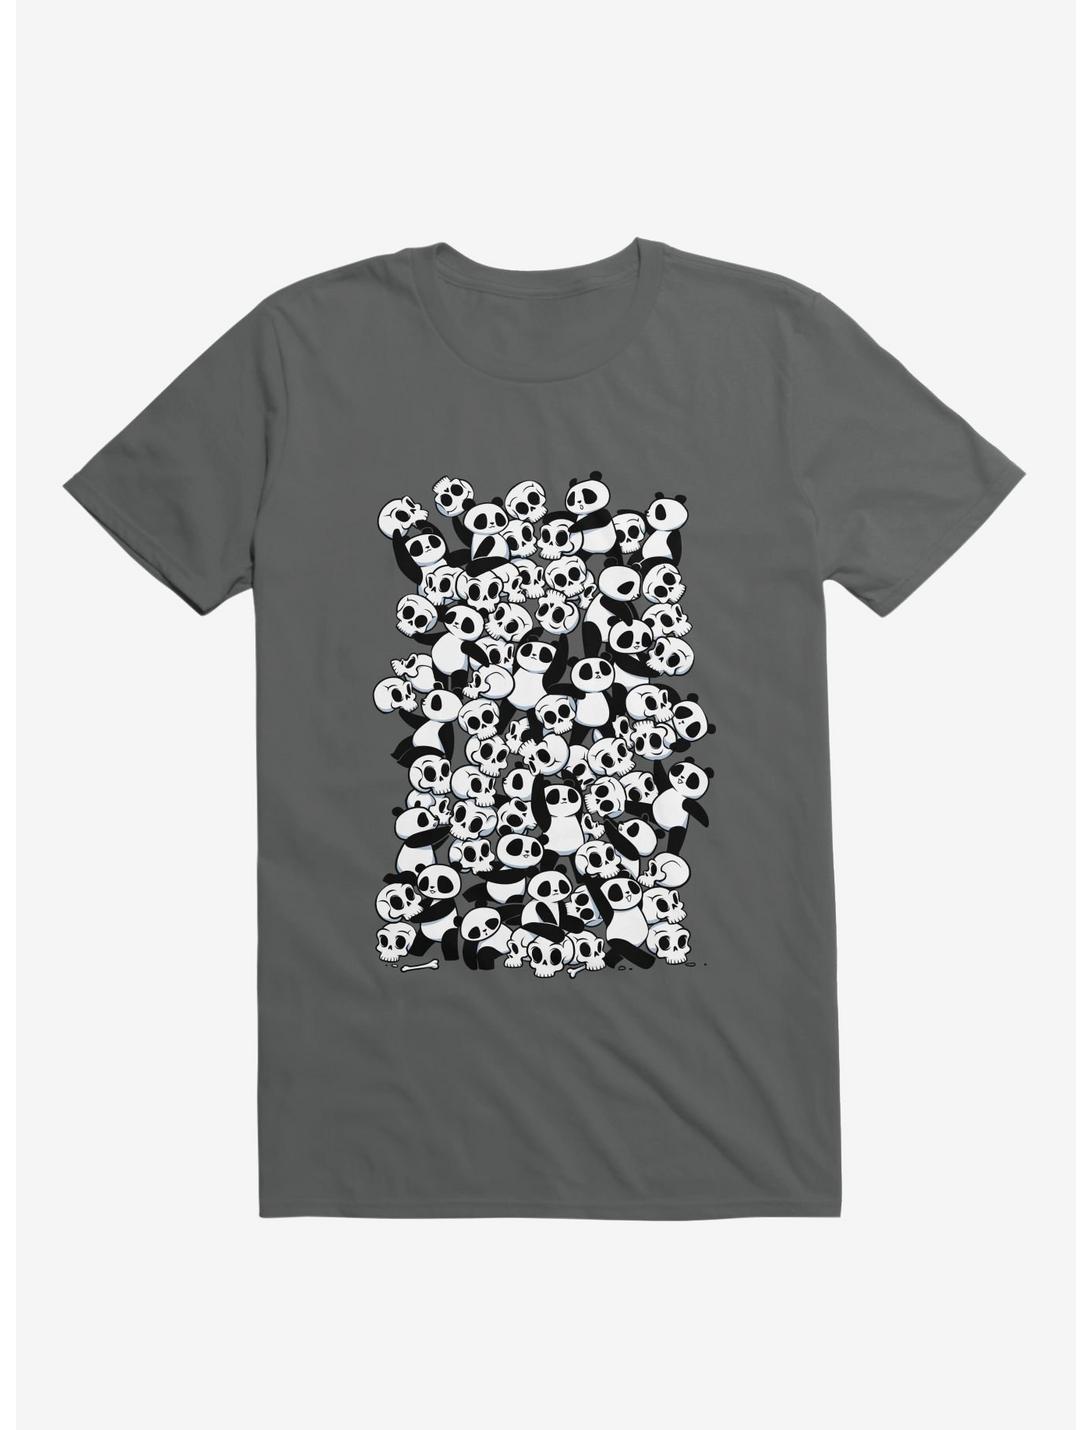 Dia De Los Muertos Panda Party Charcoal Grey T-Shirt, CHARCOAL, hi-res